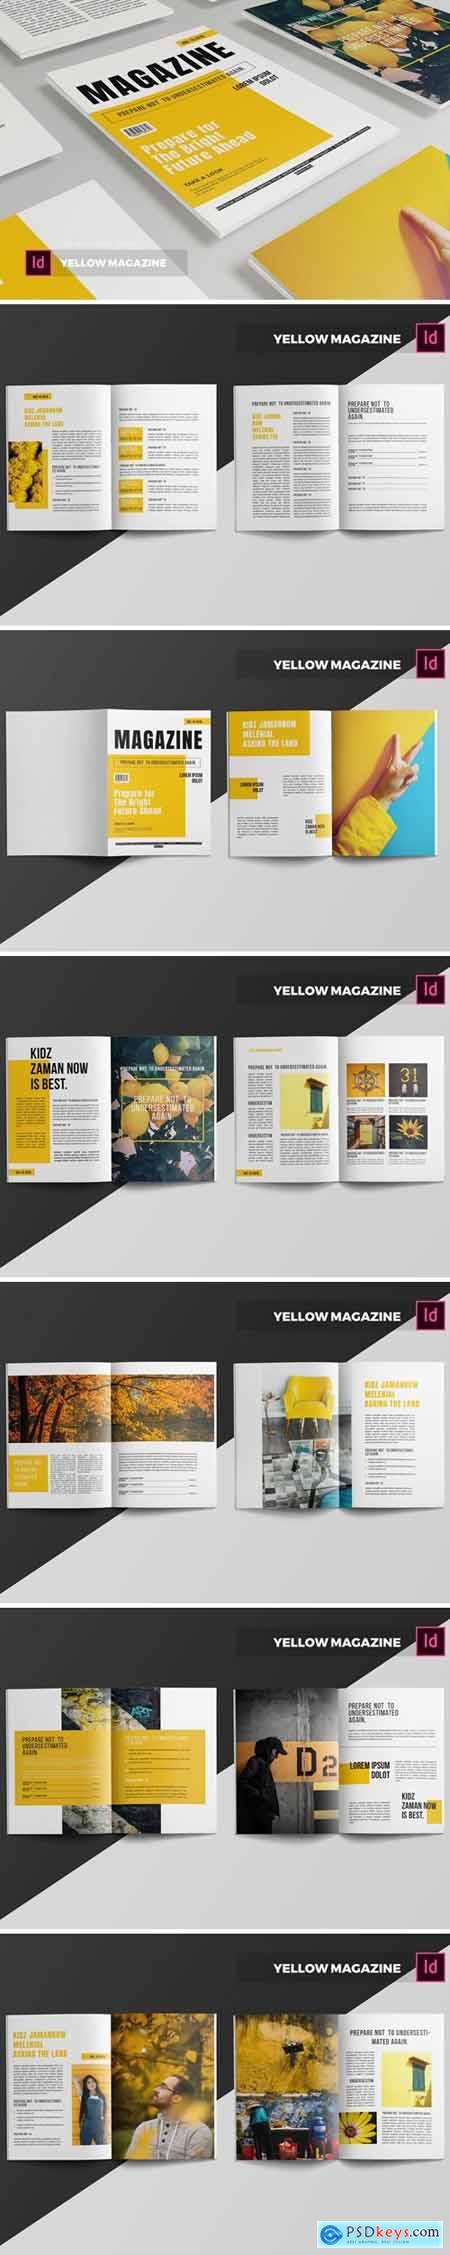 Yellow Magazine Template